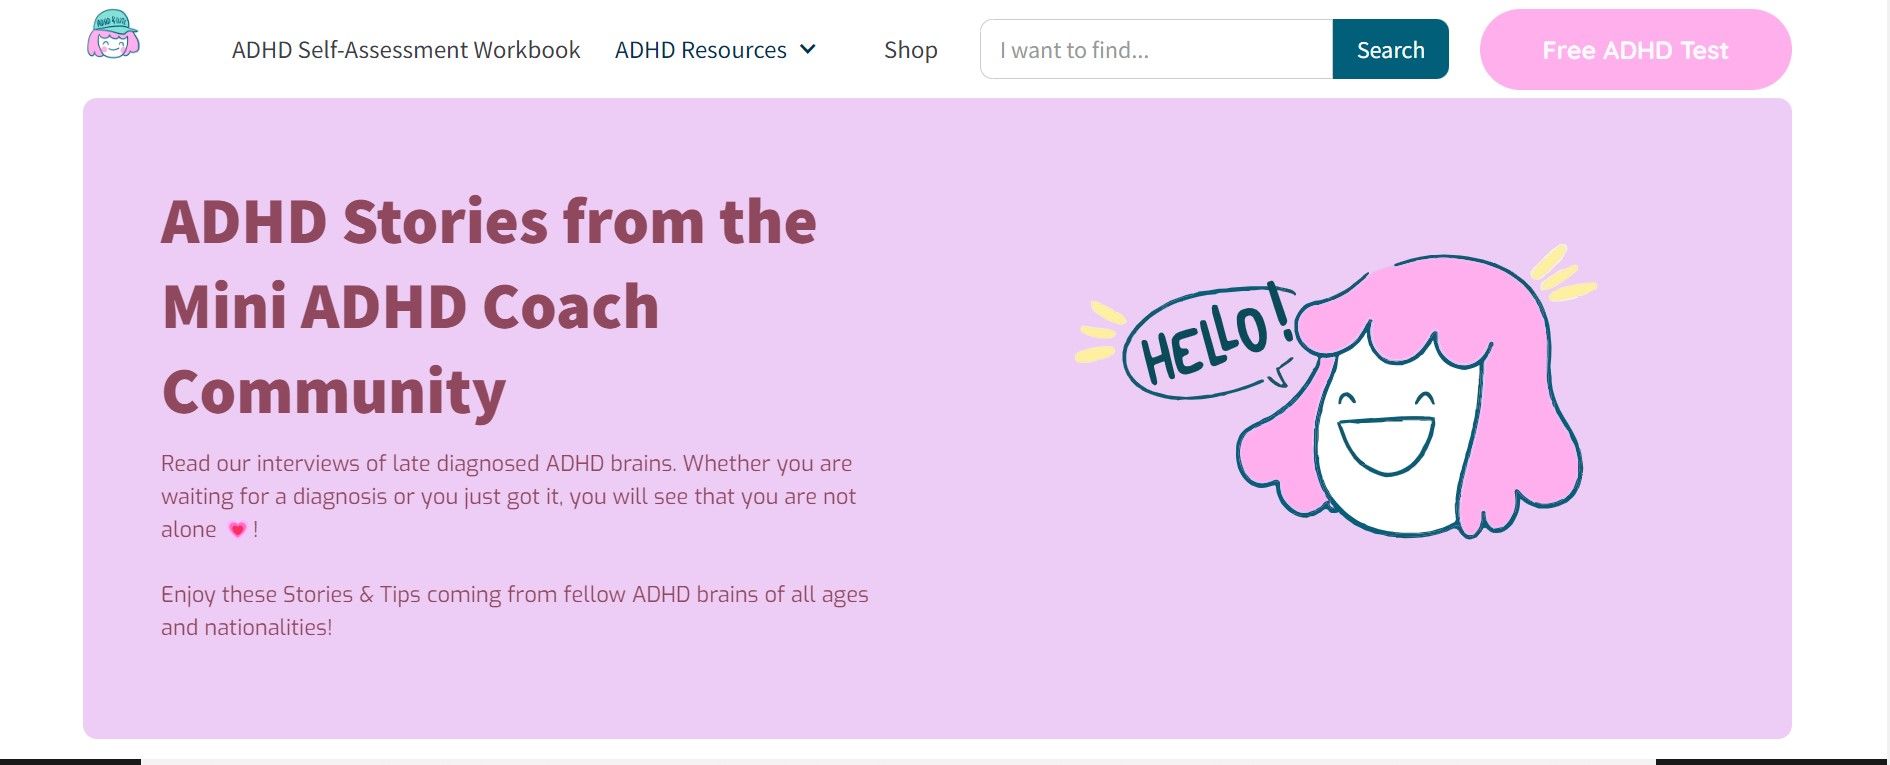 Secțiunea de poveste de pe site-ul web The Mini ADHD Coach